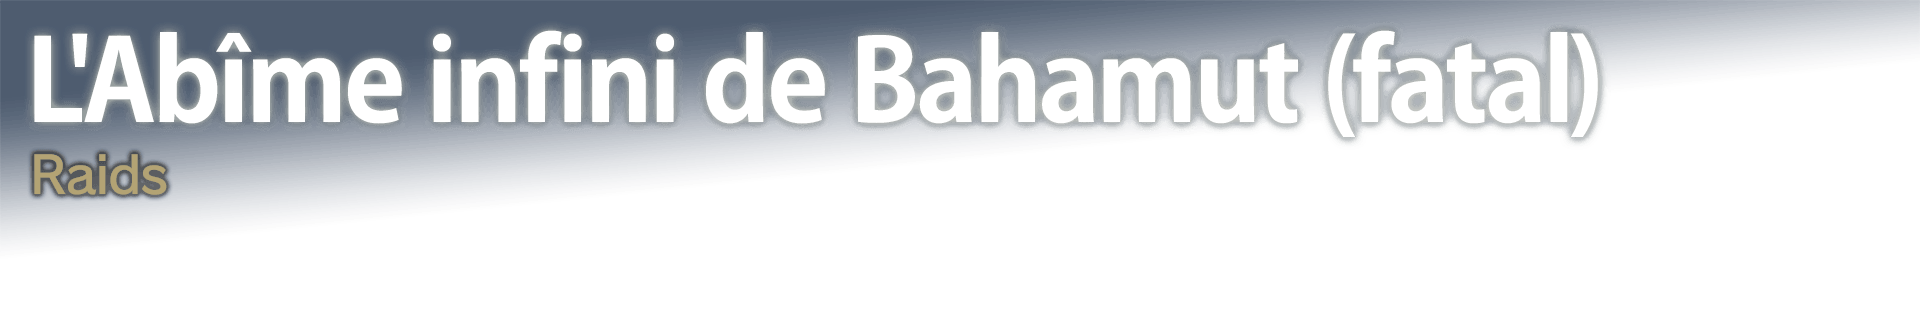 L'Abîme infini de Bahamut (fatal) Raids